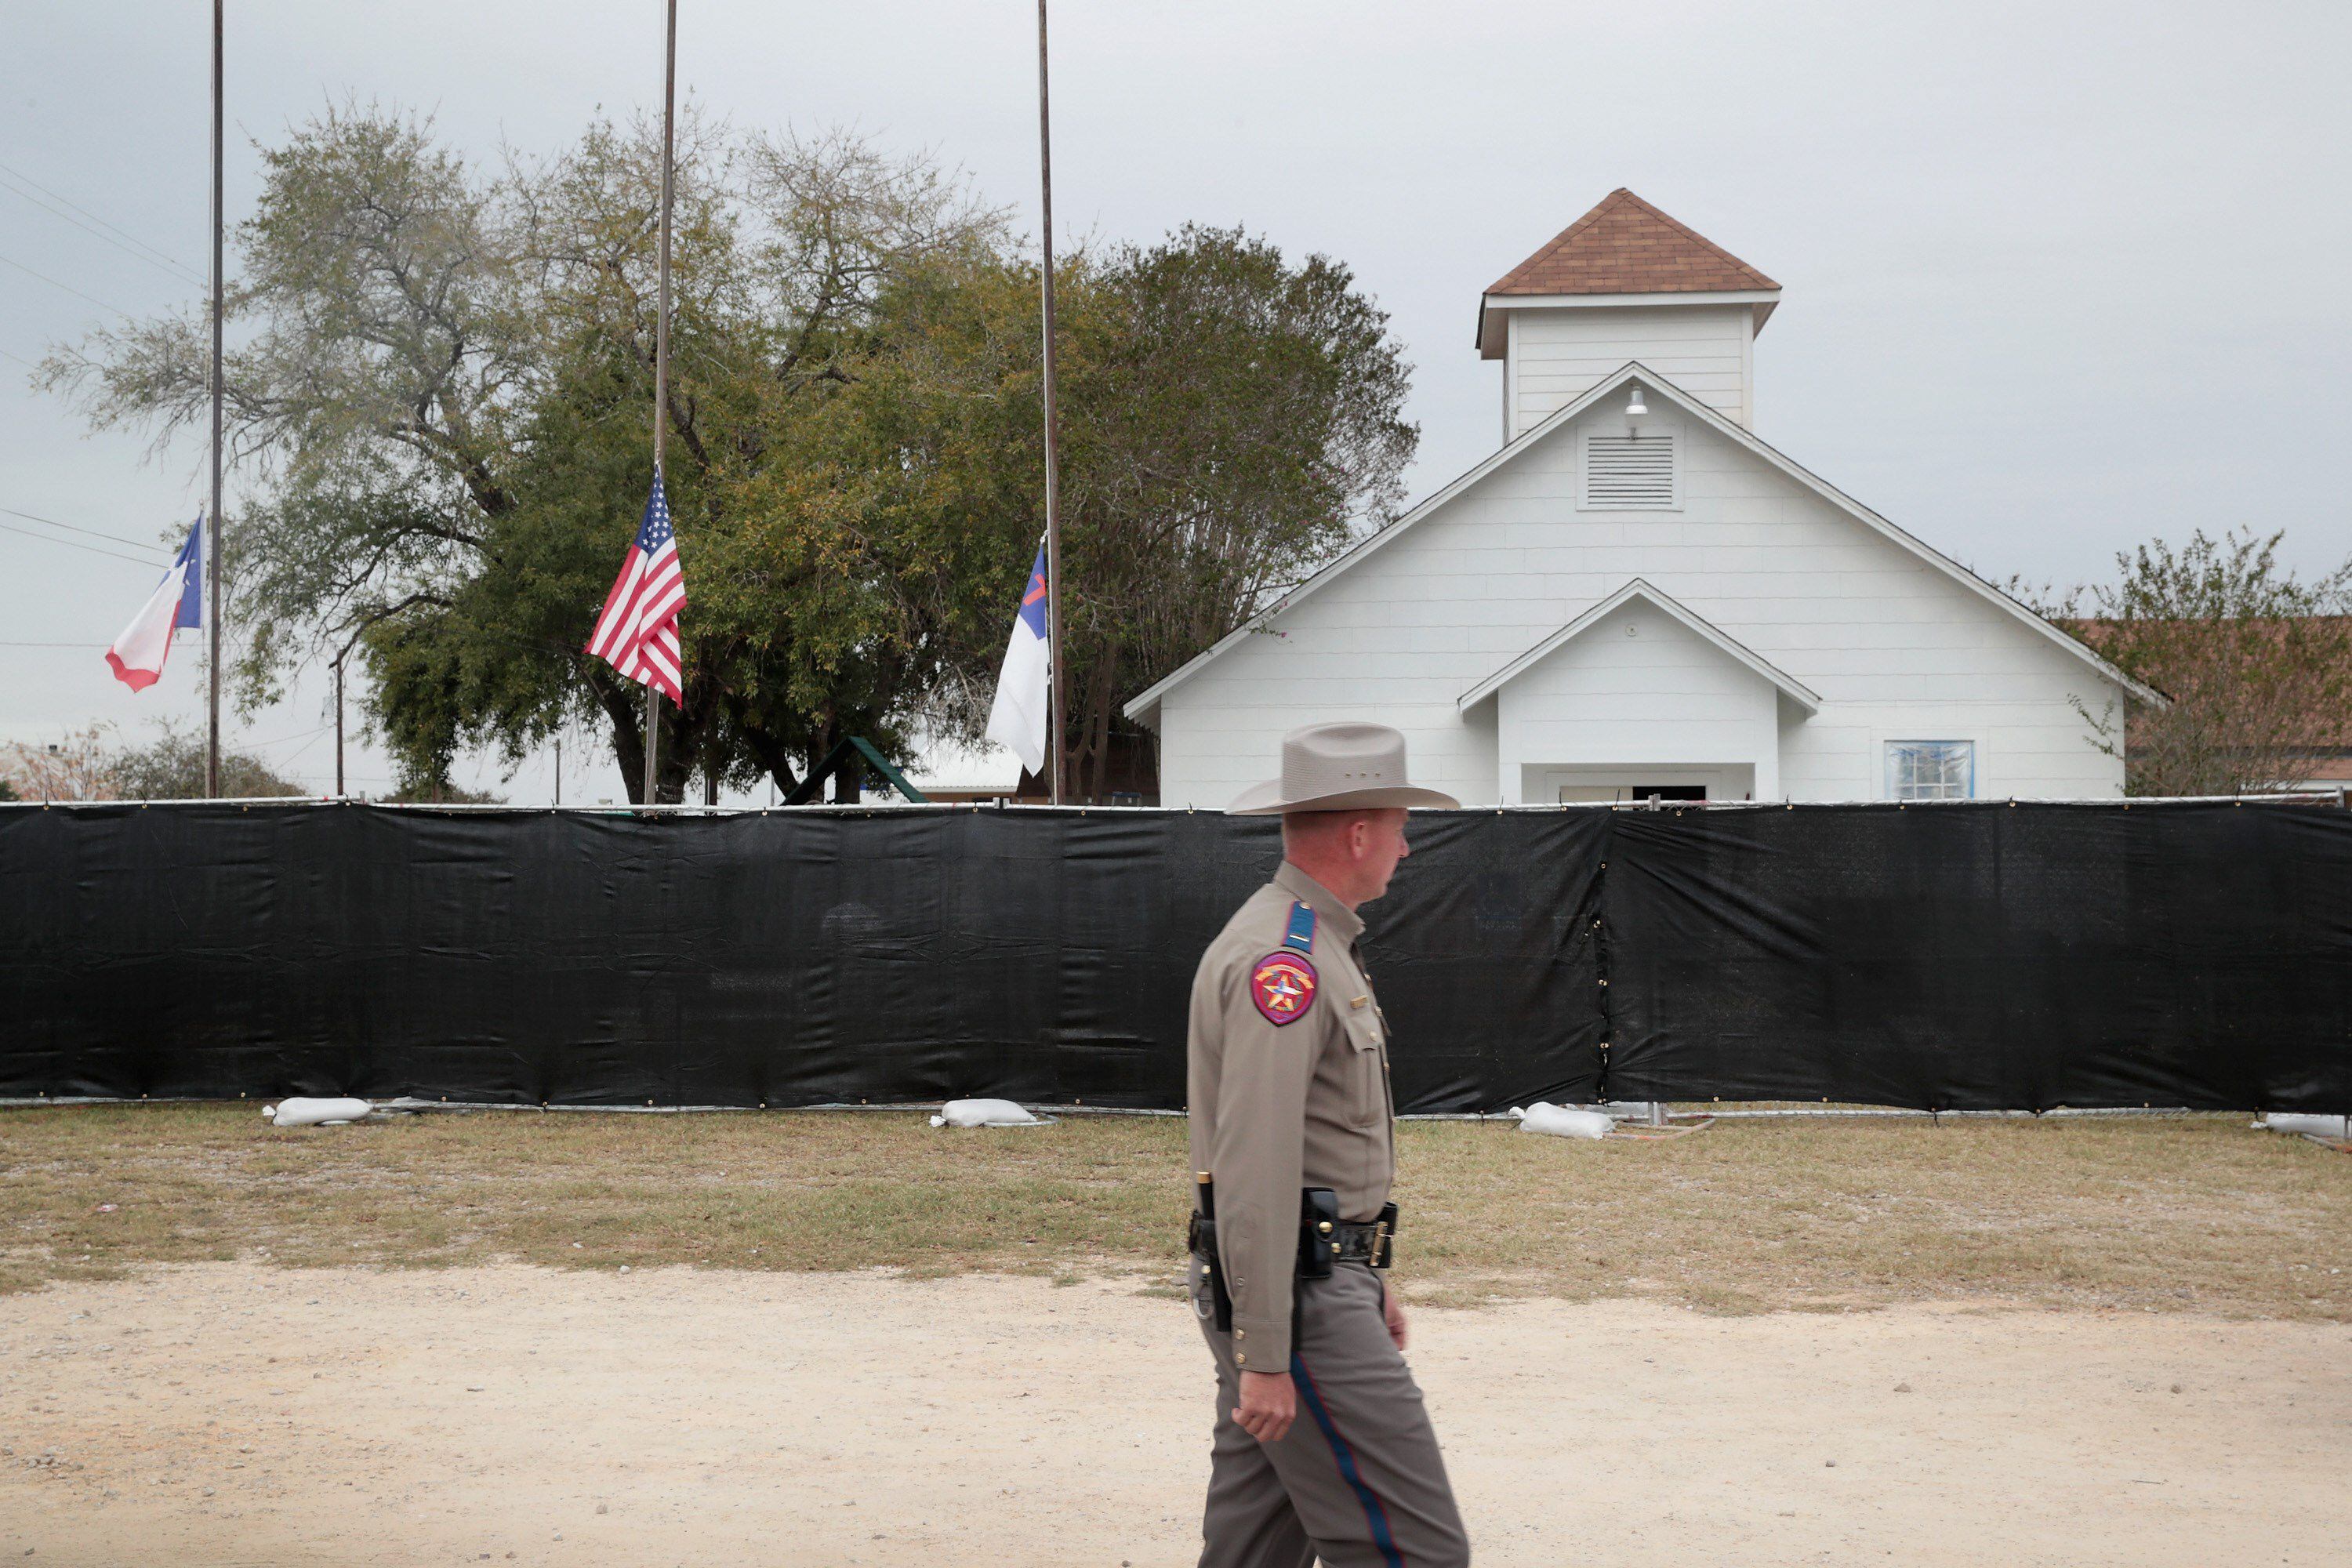 El pastor de la iglesia del tiroteo en Texas quiere demoler el edificio |  La Nación